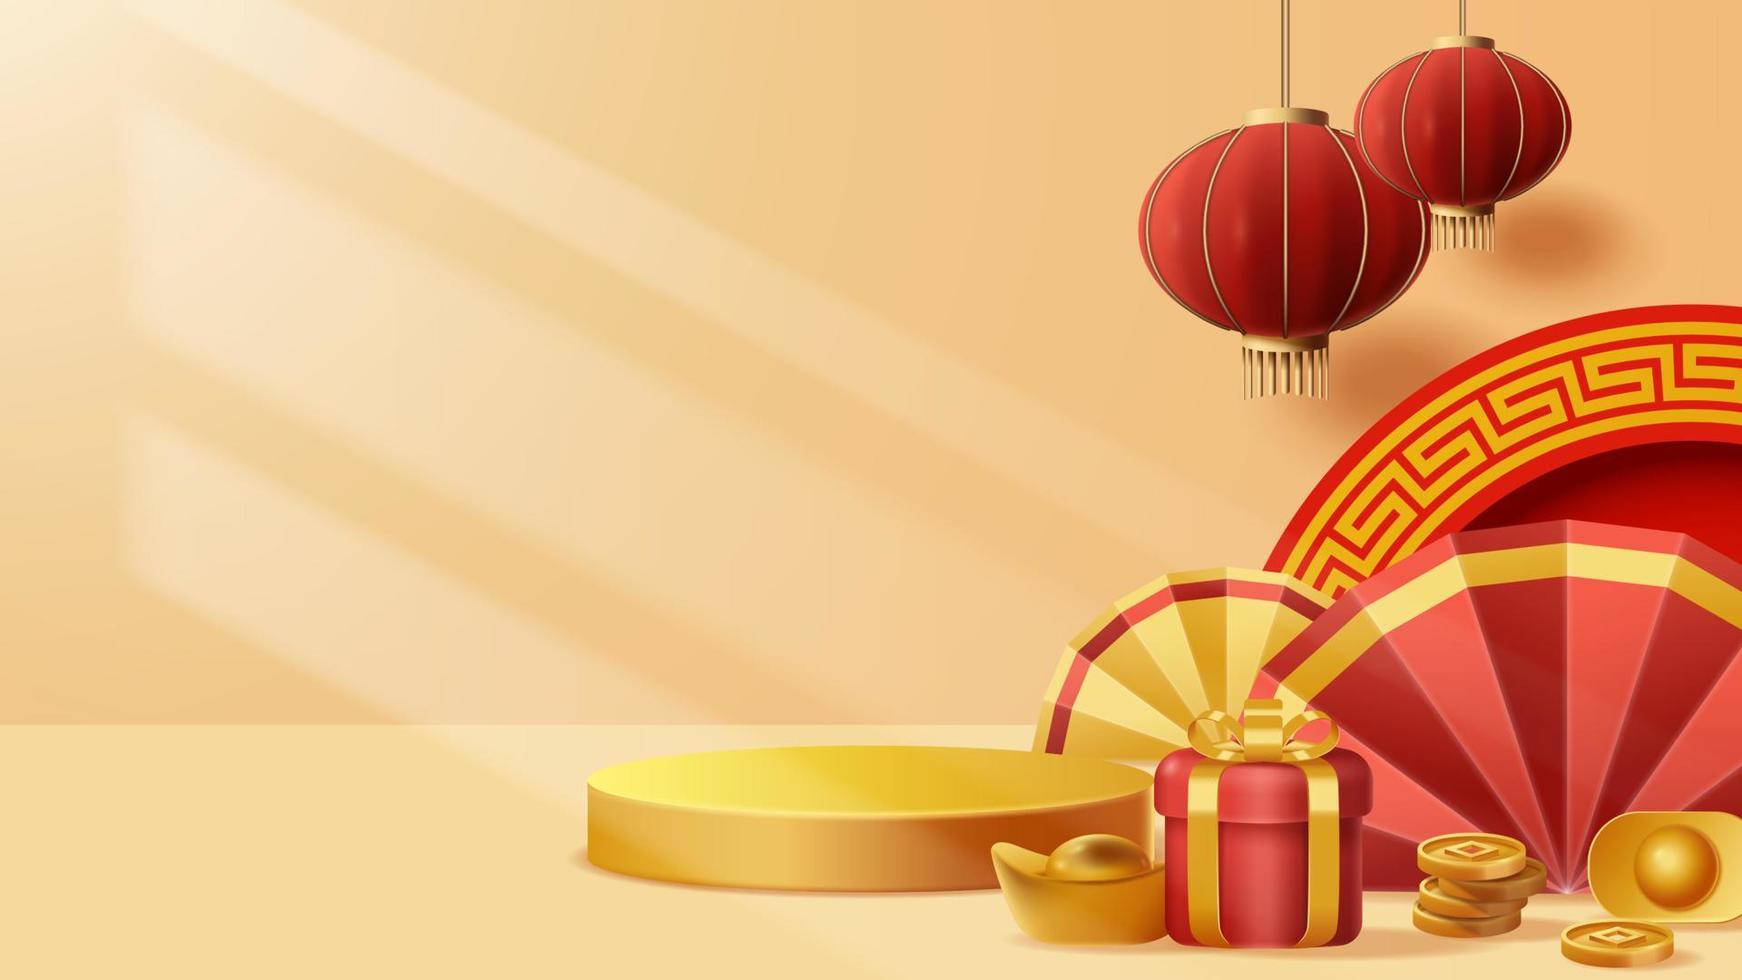 chinesische neujahrsanzeige podium dekoration hintergrund mit chinesischer verzierung. Vektor-3D-Darstellung vektor